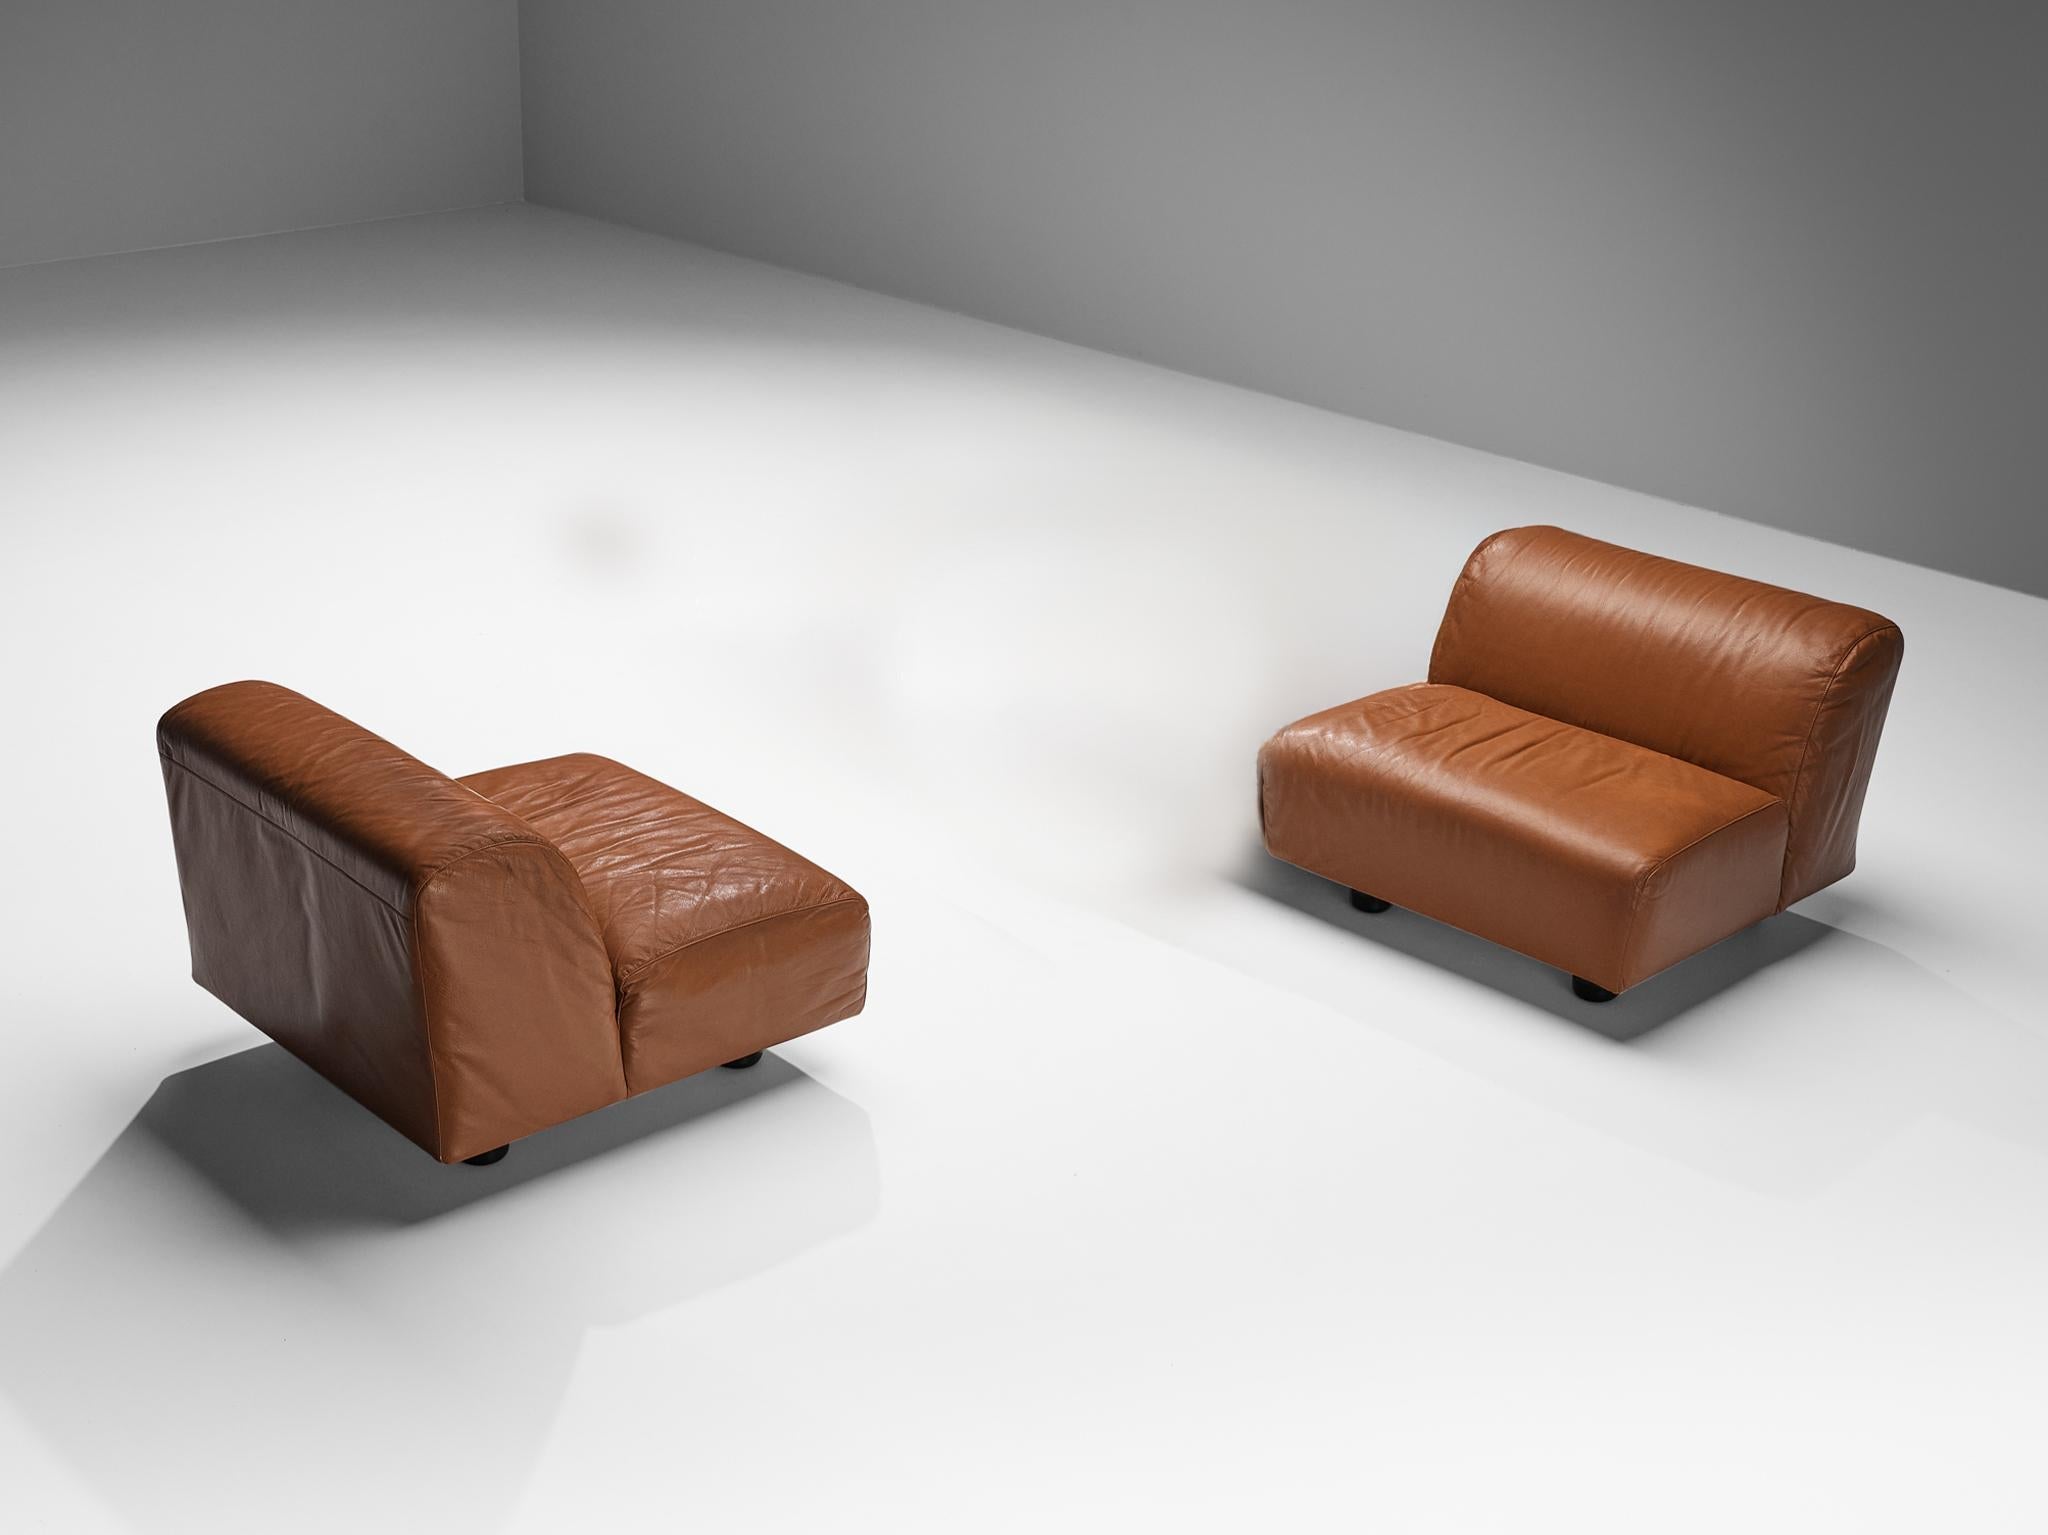 Vico Magistretti for Cassina 'Fiandra' Modular Sofa in Brown Leather